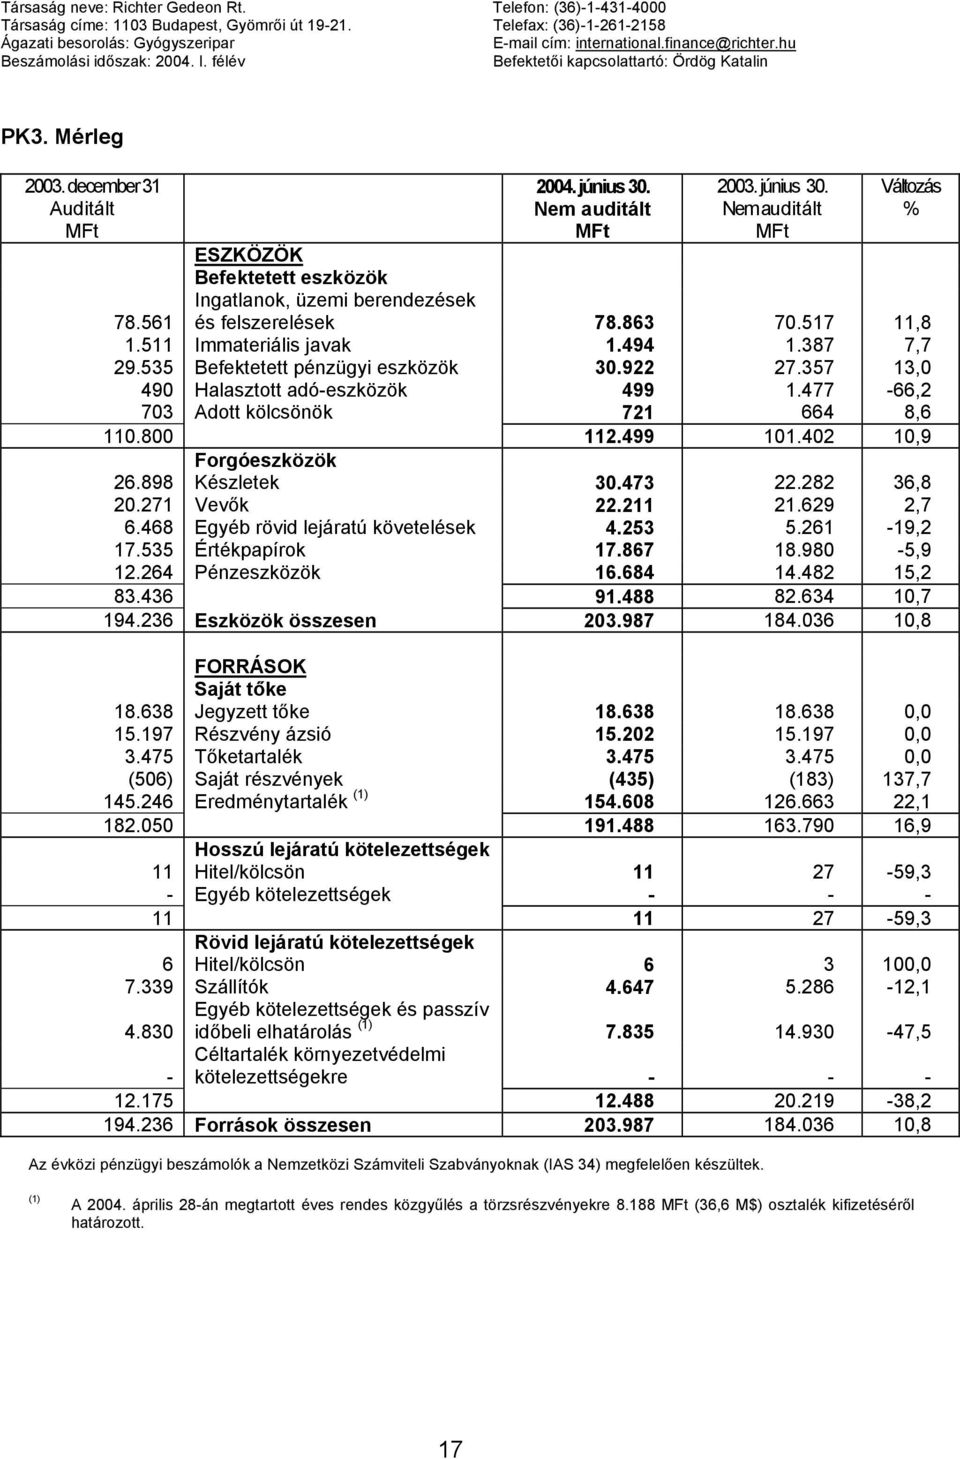 2003. június 30. Változás % ESZKÖZÖK Befektetett eszközök Ingatlanok, üzemi berendezések és felszerelések 78.863 70.517 11,8 78.561 1.511 Immateriális javak 1.494 1.387 7,7 29.